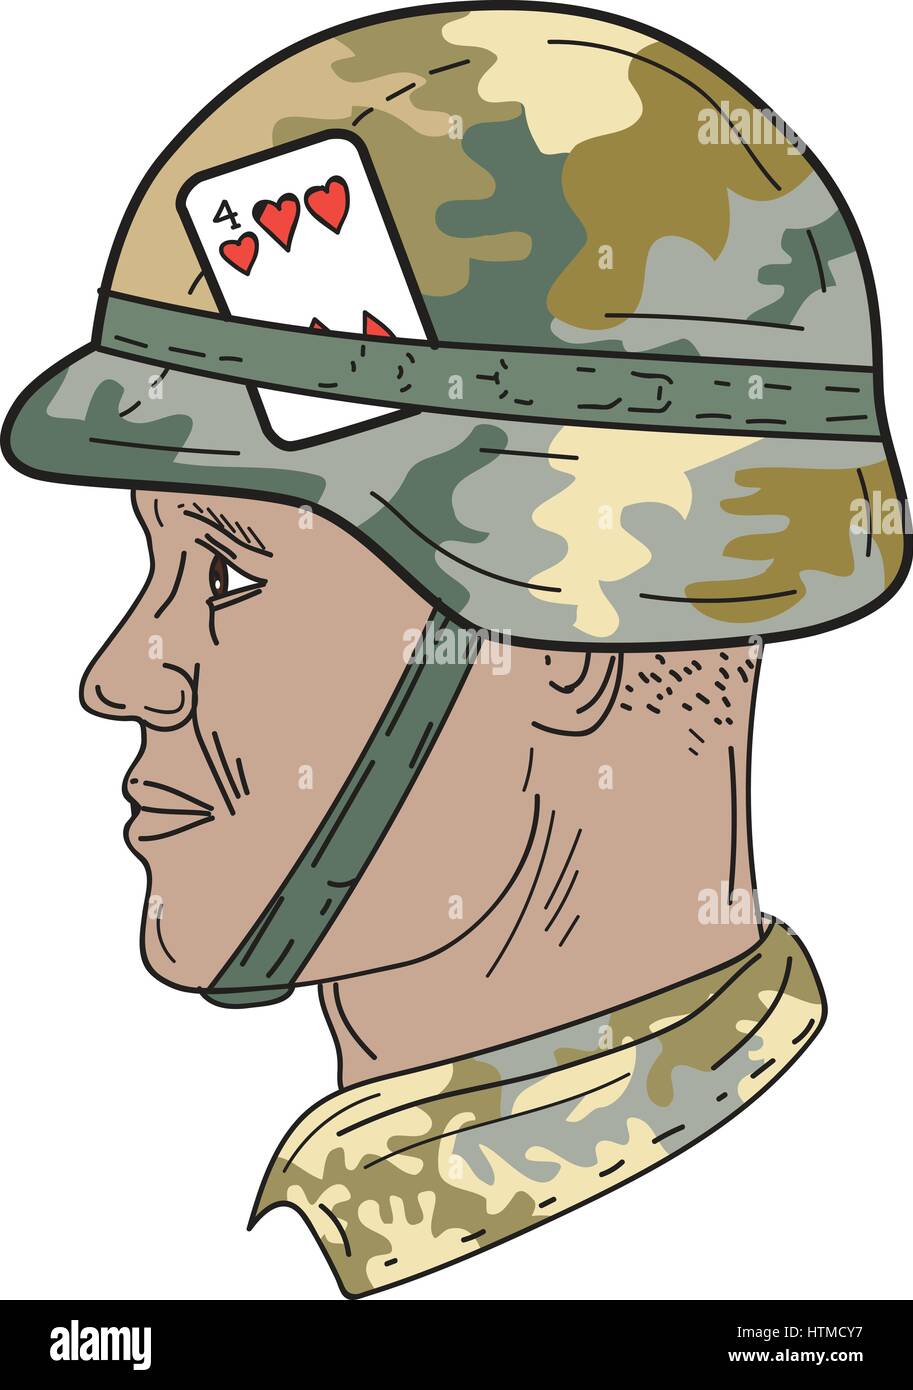 Croquis dessin illustration de style d'un soldat afro-américain portant Us Army combat Kevlar casque avec tissu camouflage et quatre cœurs de p Illustration de Vecteur